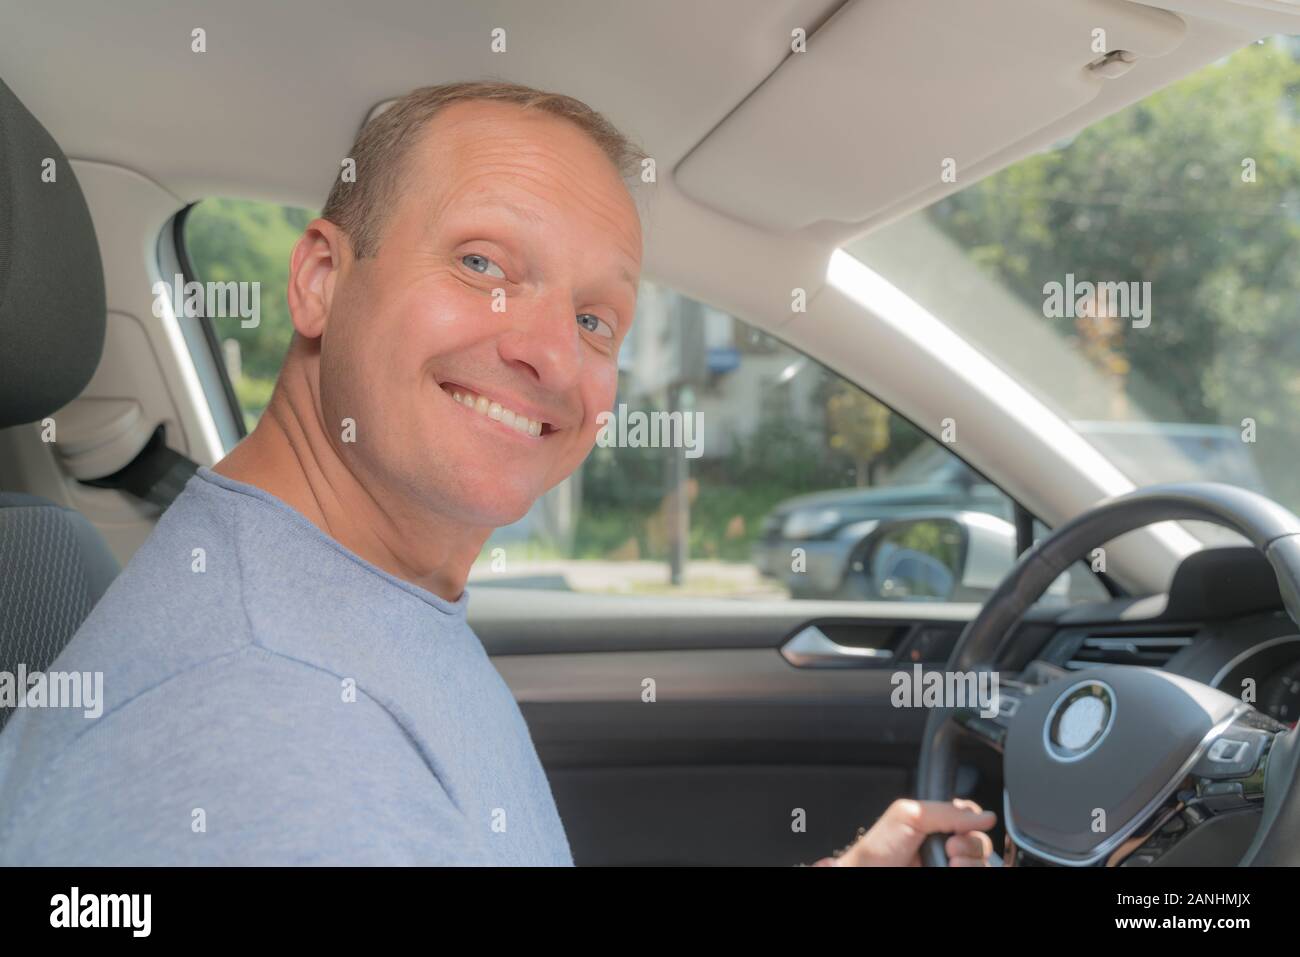 Ritratto di felice proprietario di nuova automobile, guardando la fotocamera. Bionda uomo prese una polizza di assicurazione per la sua nuova vettura, provano gioia e sorridente. Colore soffice Foto Stock